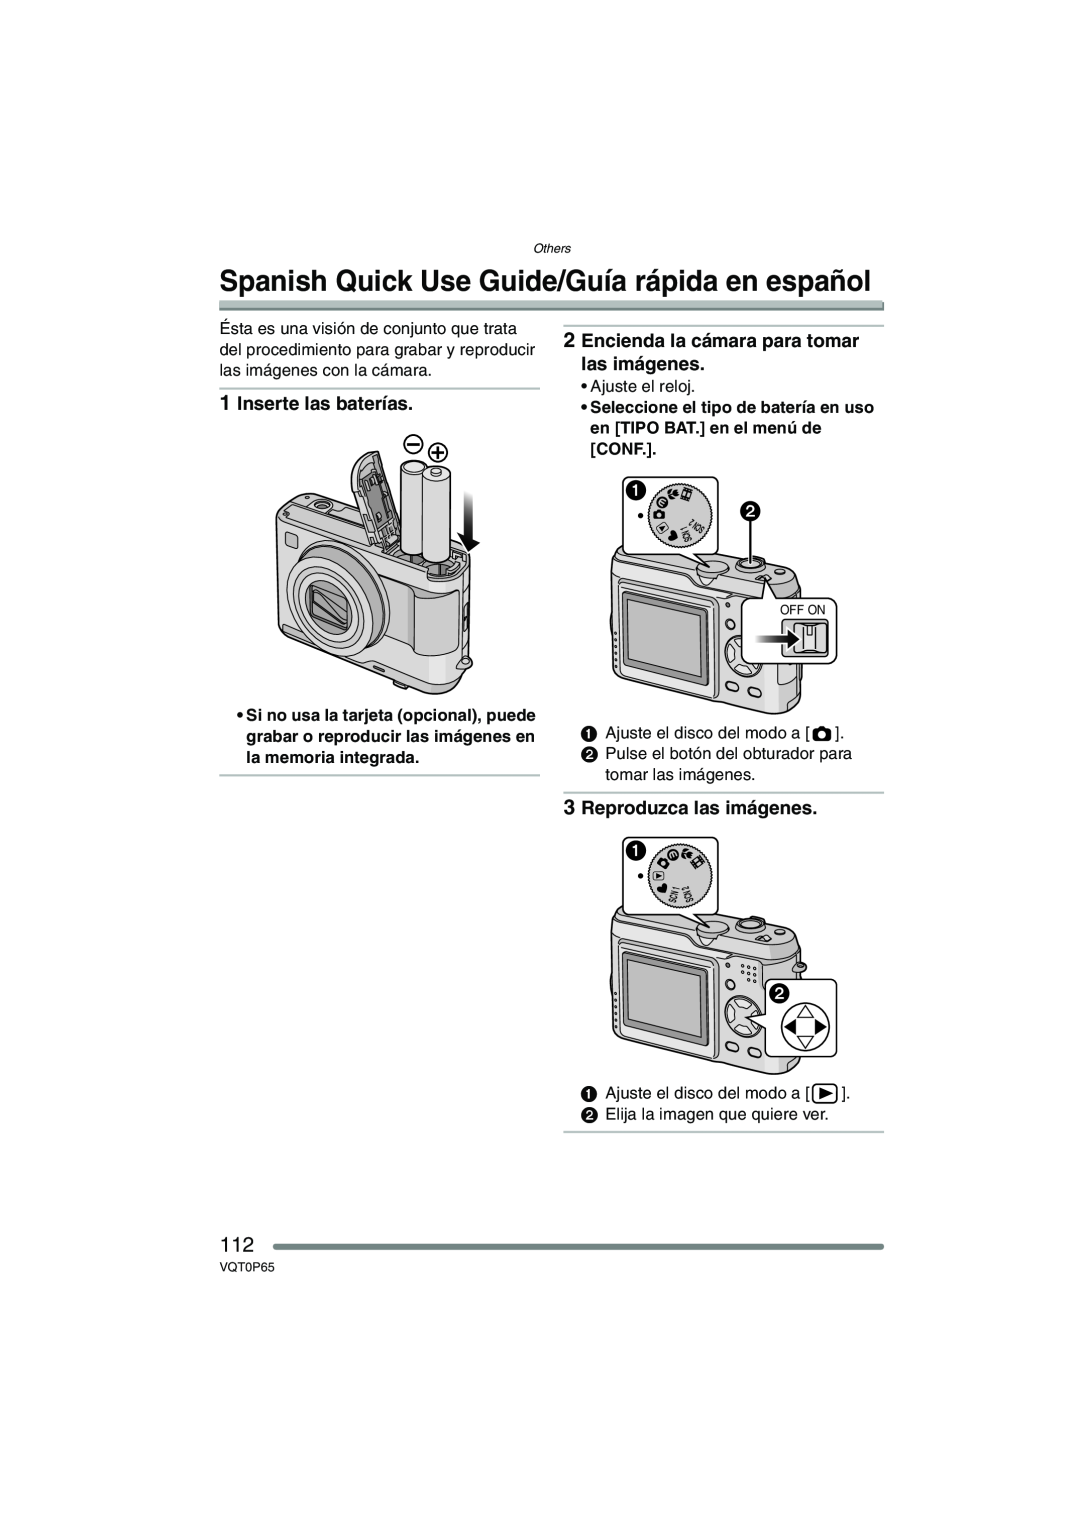 Panasonic DMC-LZ2PP Spanish Quick Use Guide/Guía rápida en español, Inserte las baterías, Reproduzca las imágenes 